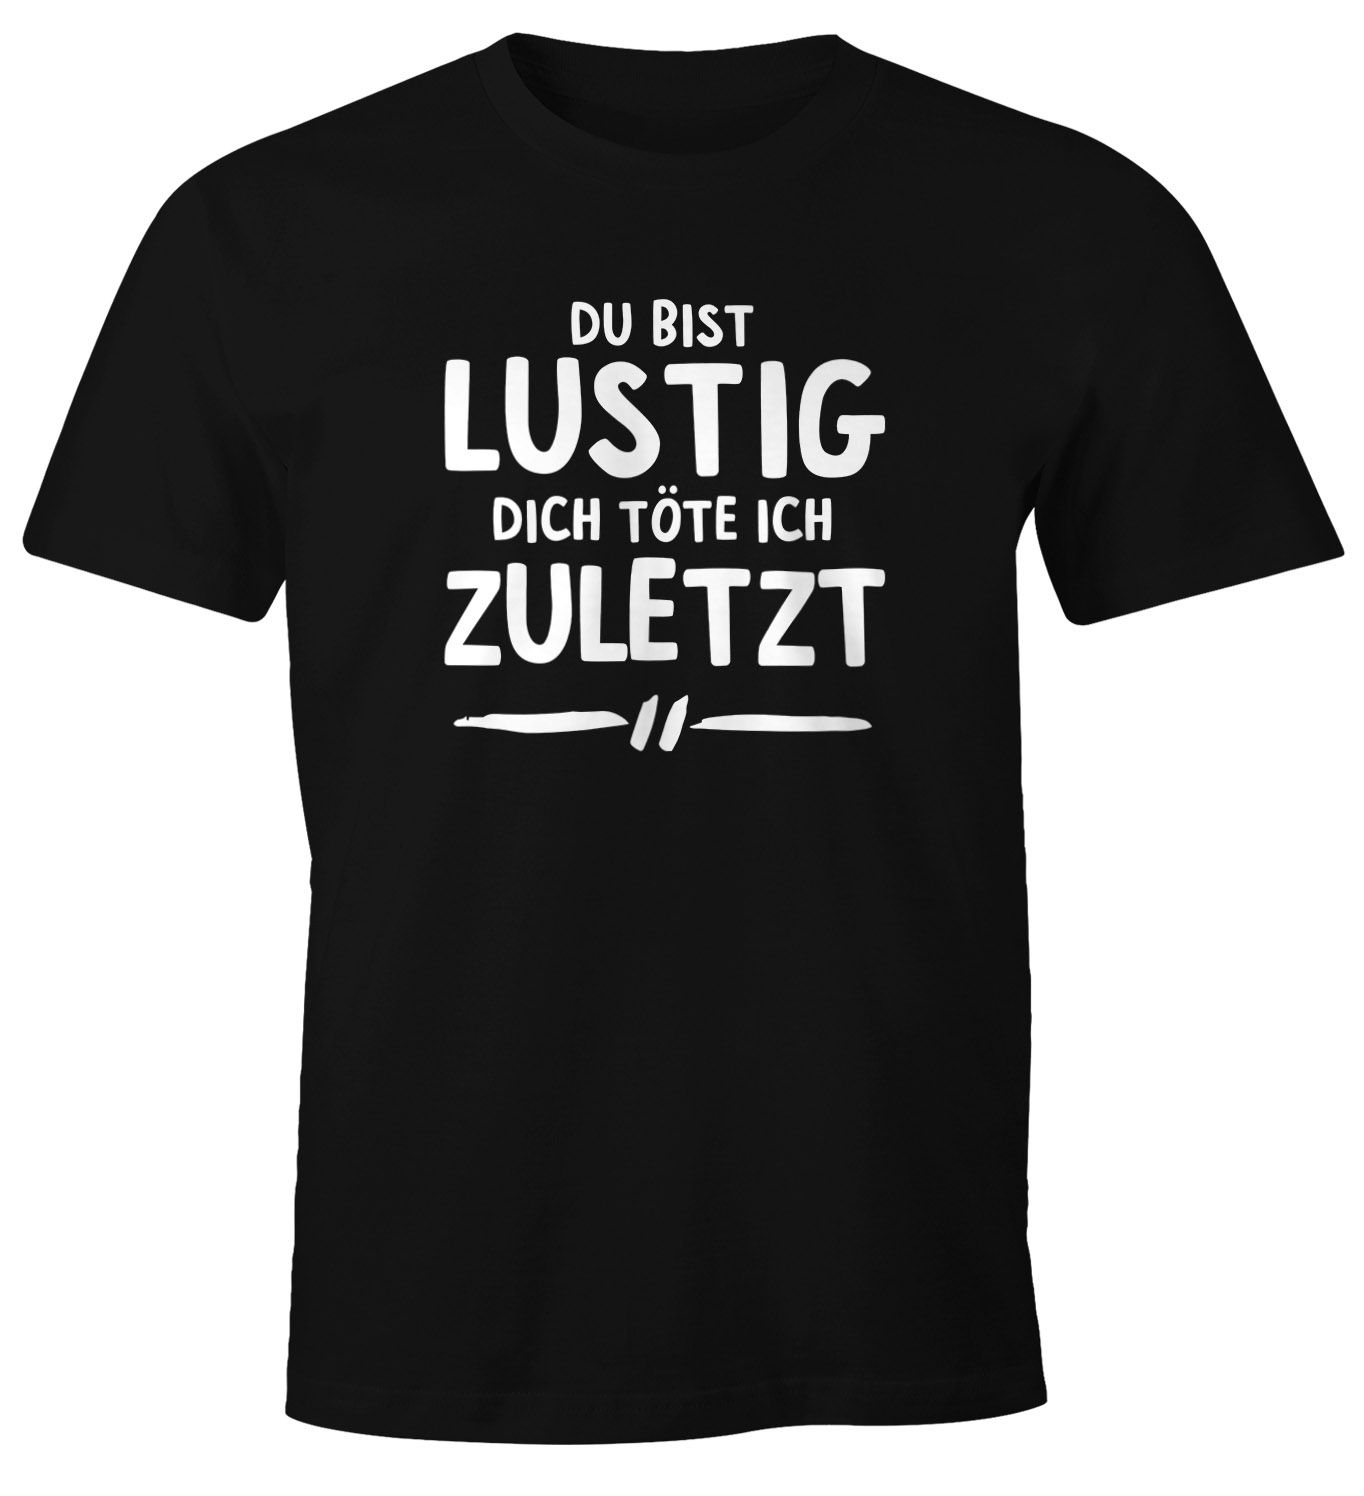 34+ T shirt witzige sprueche ideas in 2021 